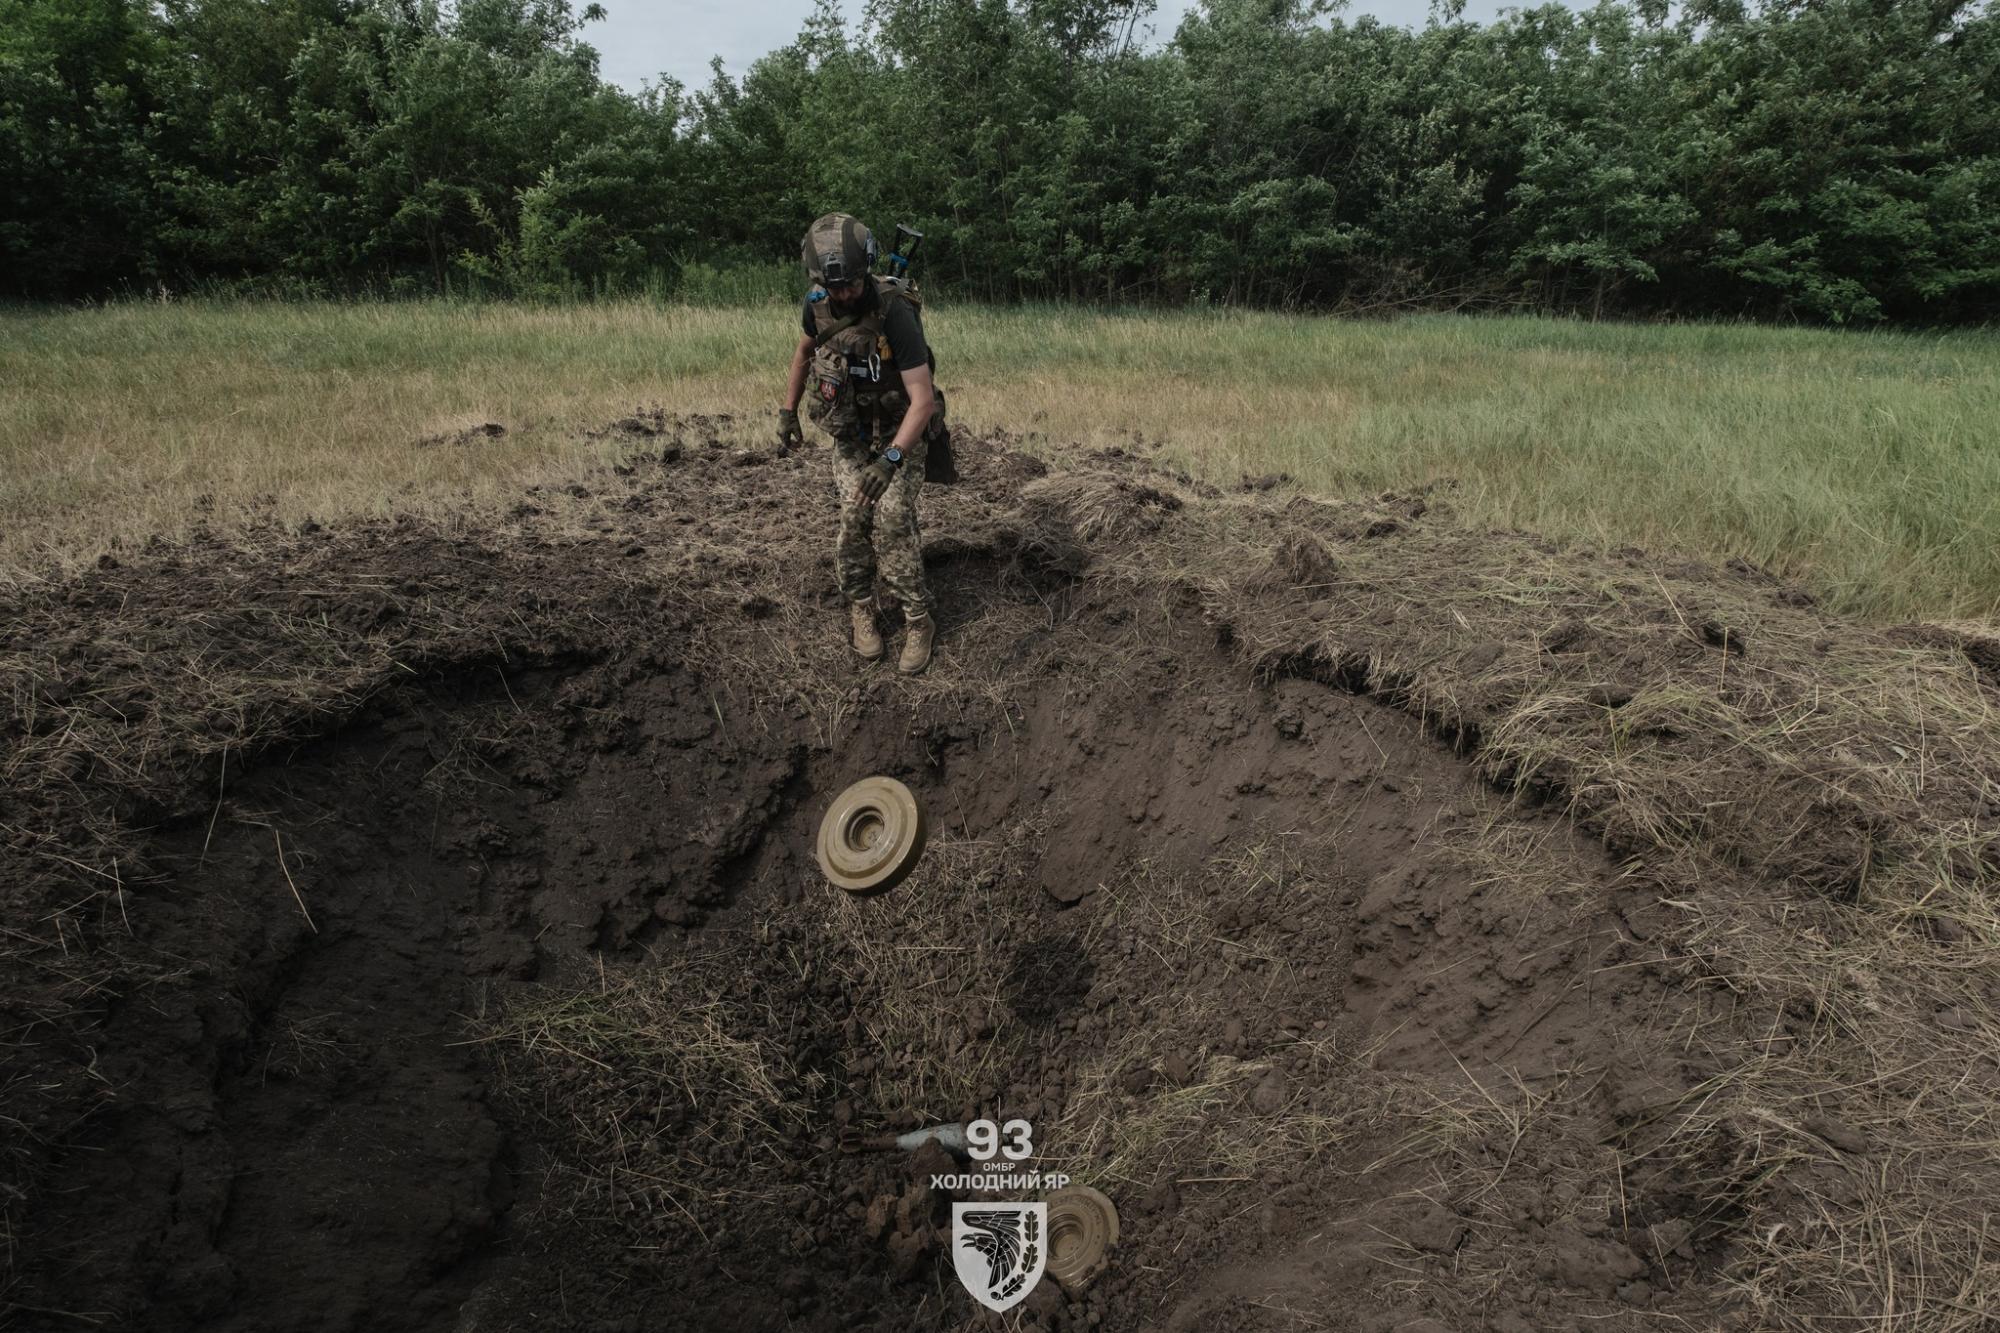 "Понадобятся сотни лет". 93 бригада показала, как разминируют Украину: фото